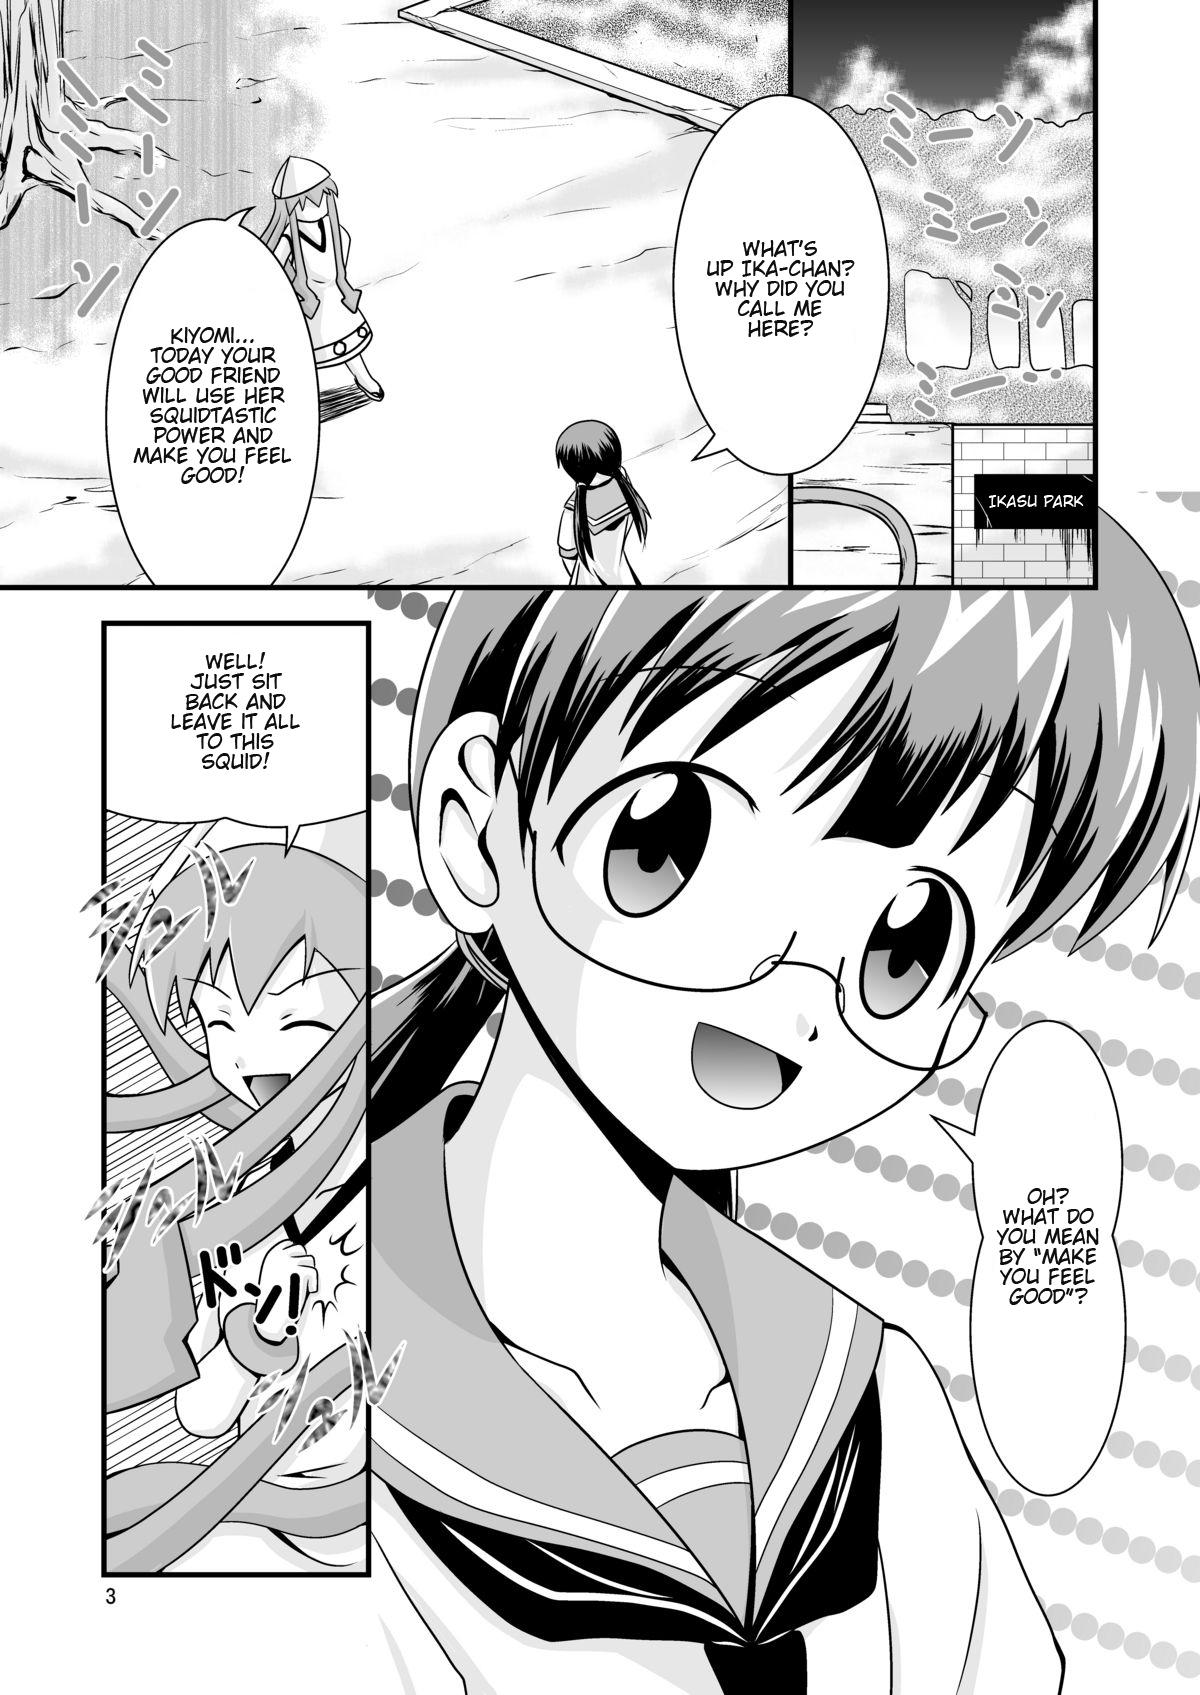 Gym Kiyomi to Sanae to Ika-chan to! - Shinryaku ika musume Job - Page 3